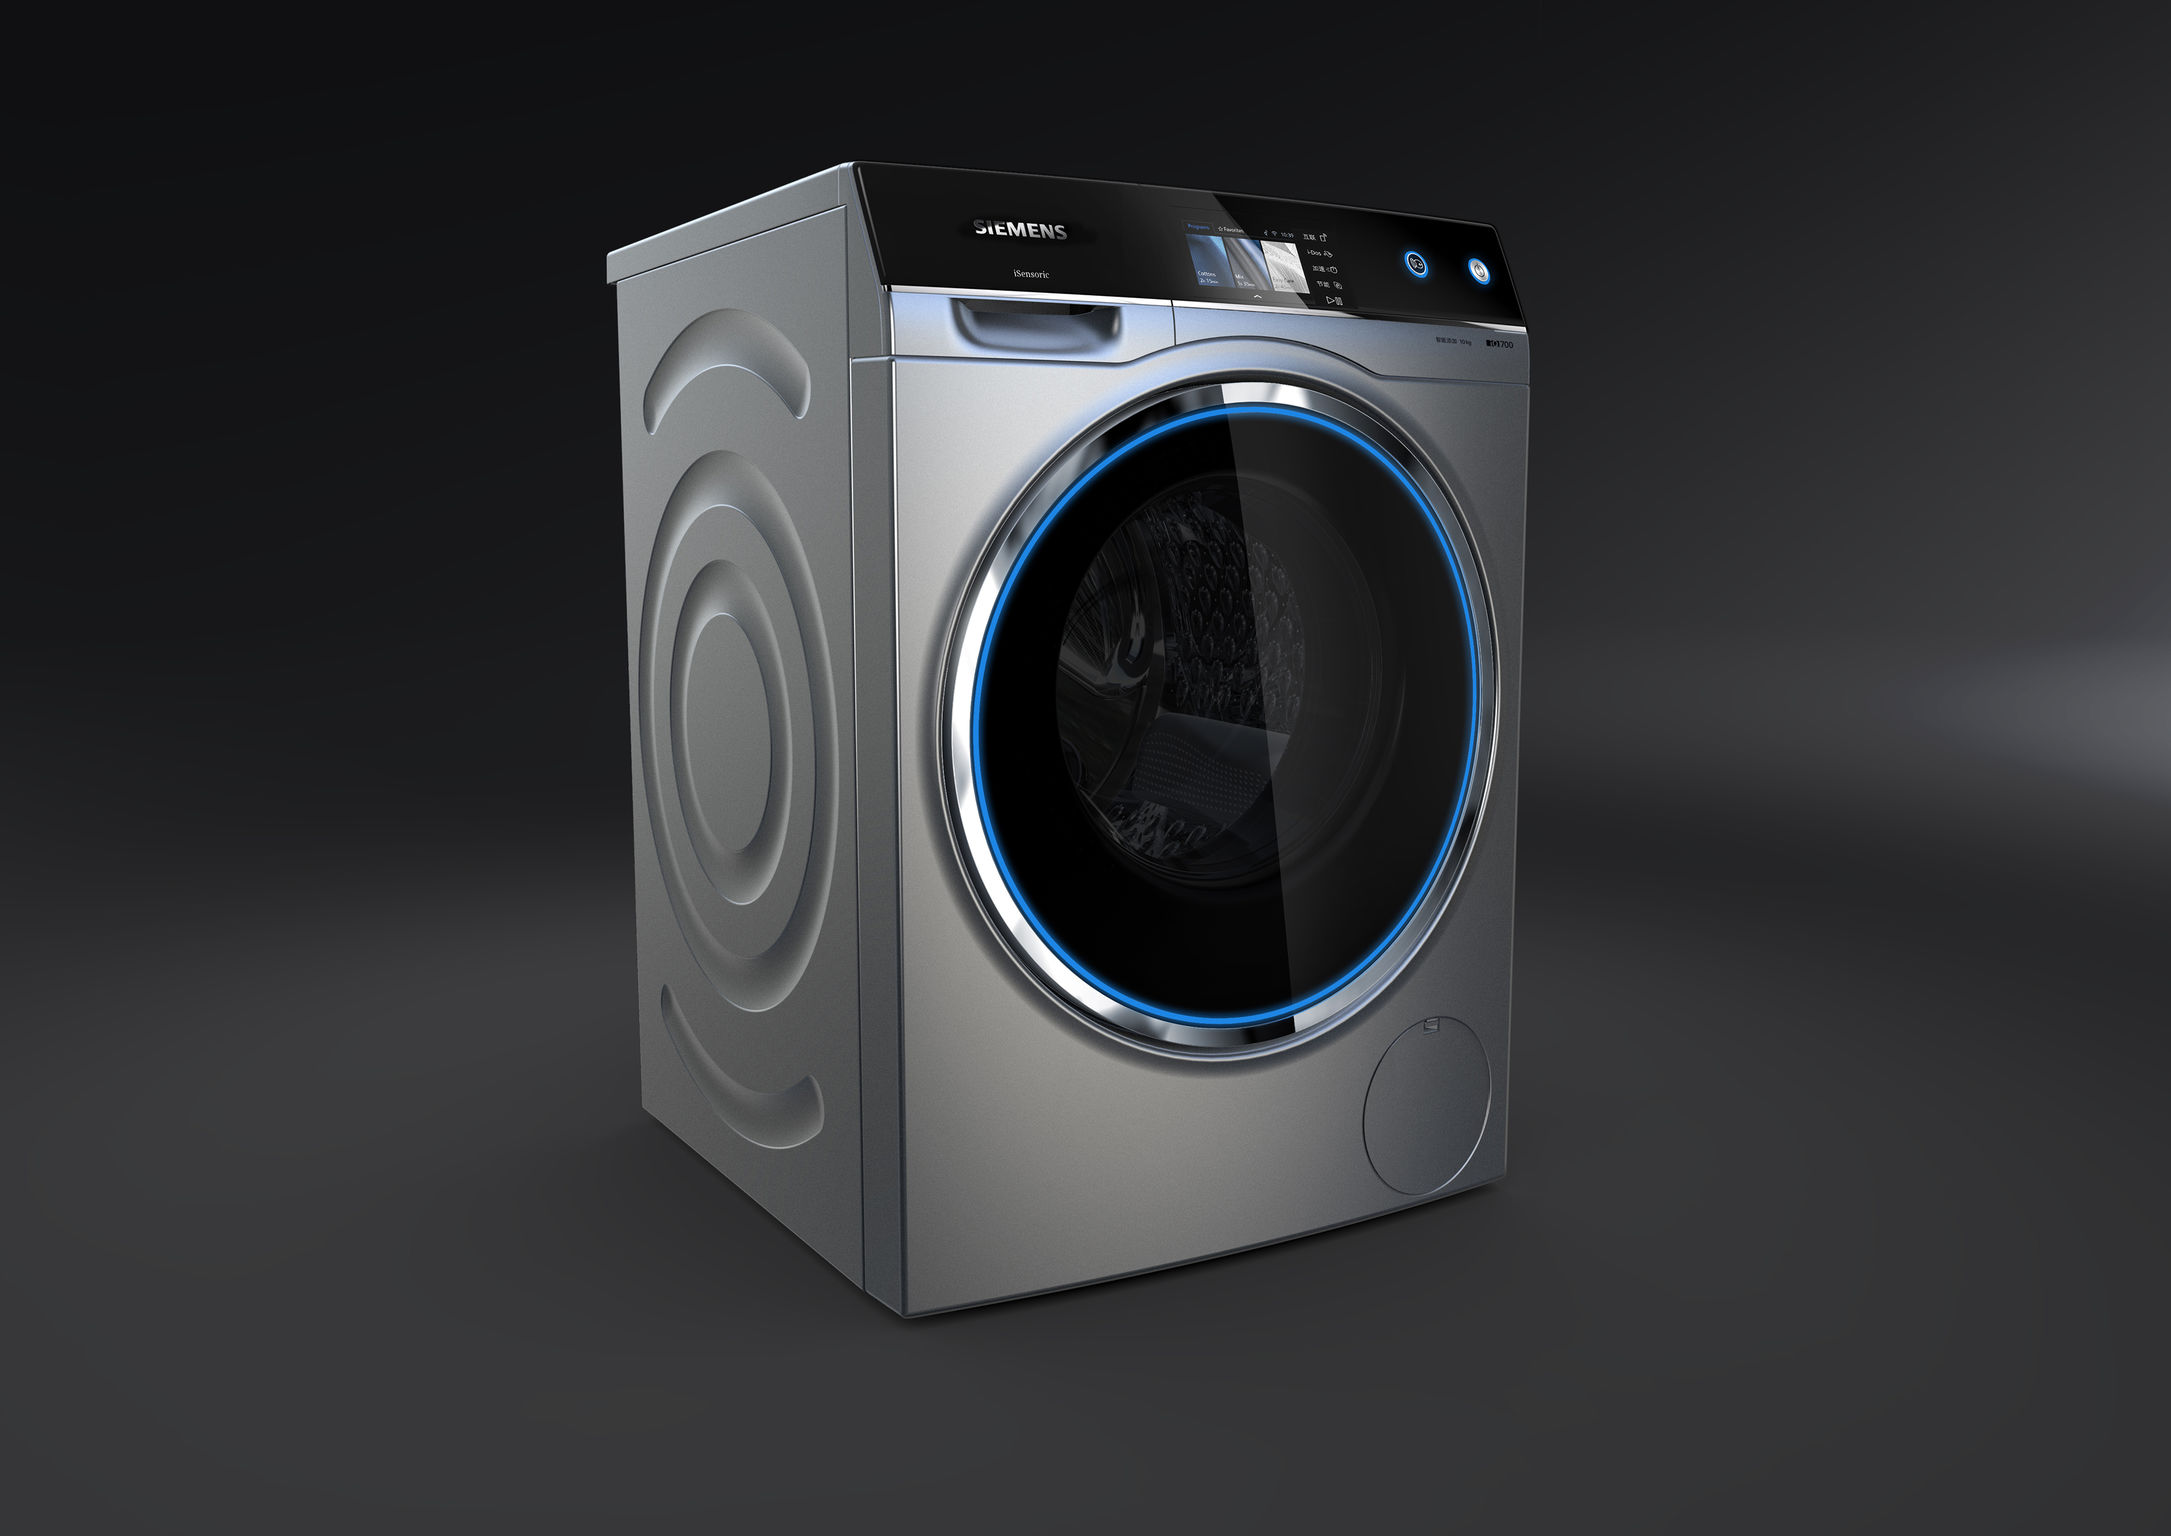 Washer. Стиральная машина Дайсон. Siemens washing Machine. Стиральная машина VR WN-201v. Стиральная машина Эппл.